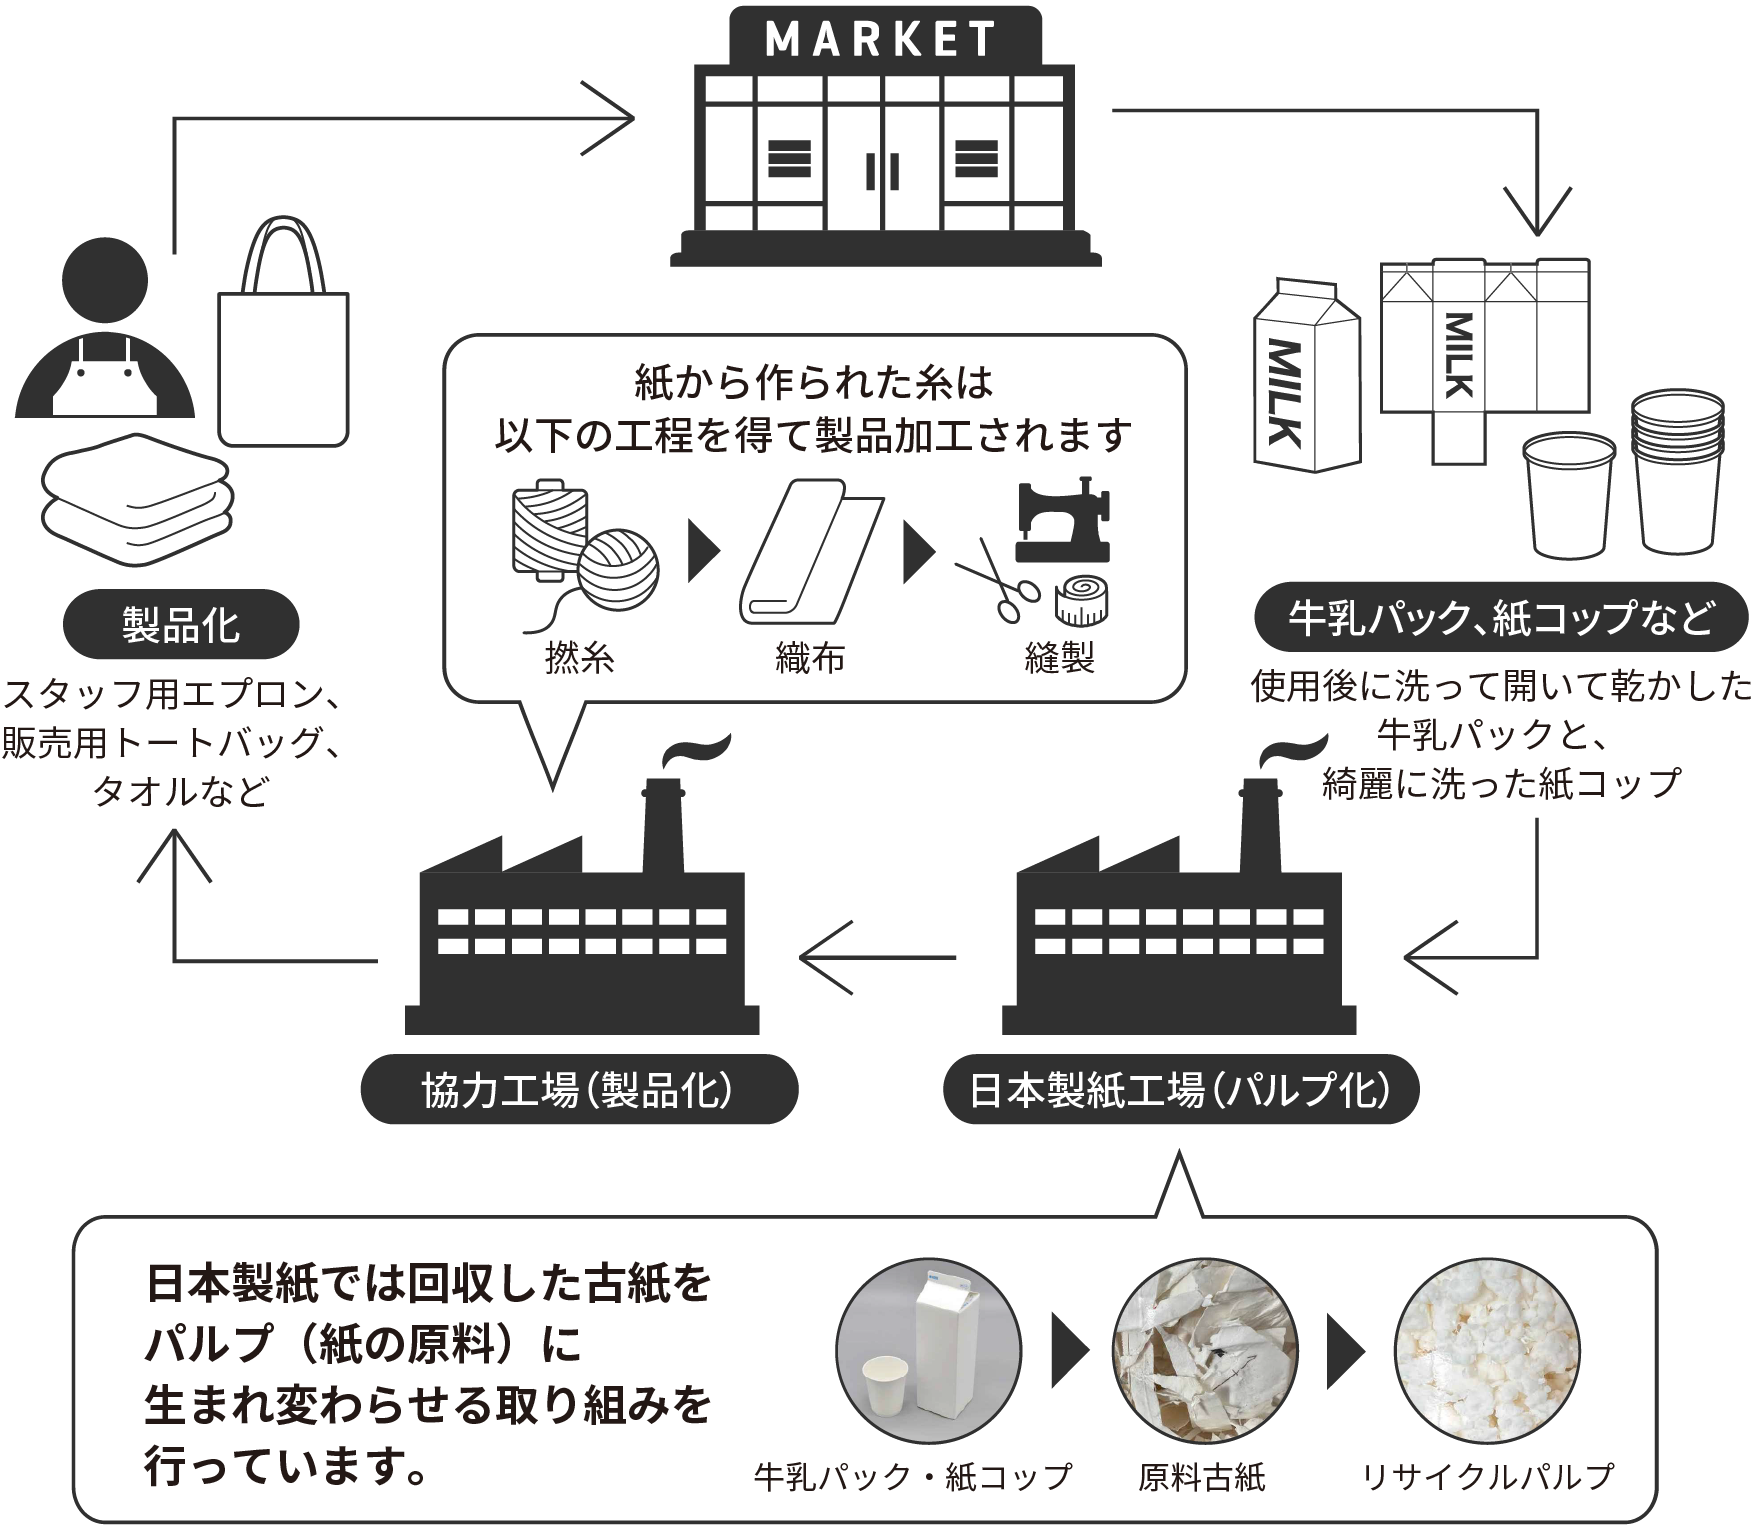 MARKET → 牛乳パック、紙コップなど → 日本製紙工場（パルプ化） → 協力工場（製品化） → 製品化